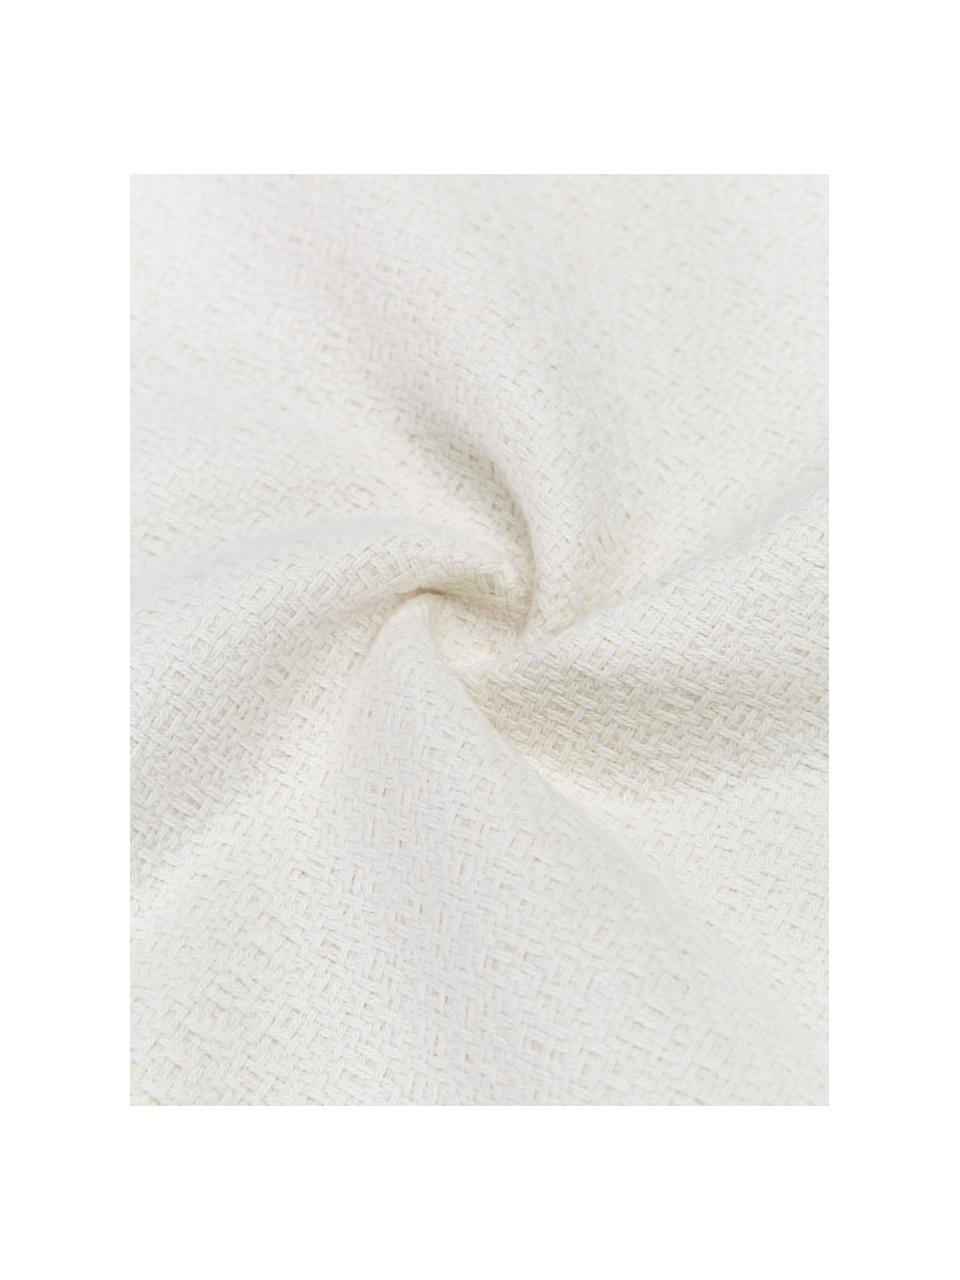 Kissenhülle Lorel mit dekorativen Fransen, 100% Baumwolle, Weiß, B 40 x L 40 cm